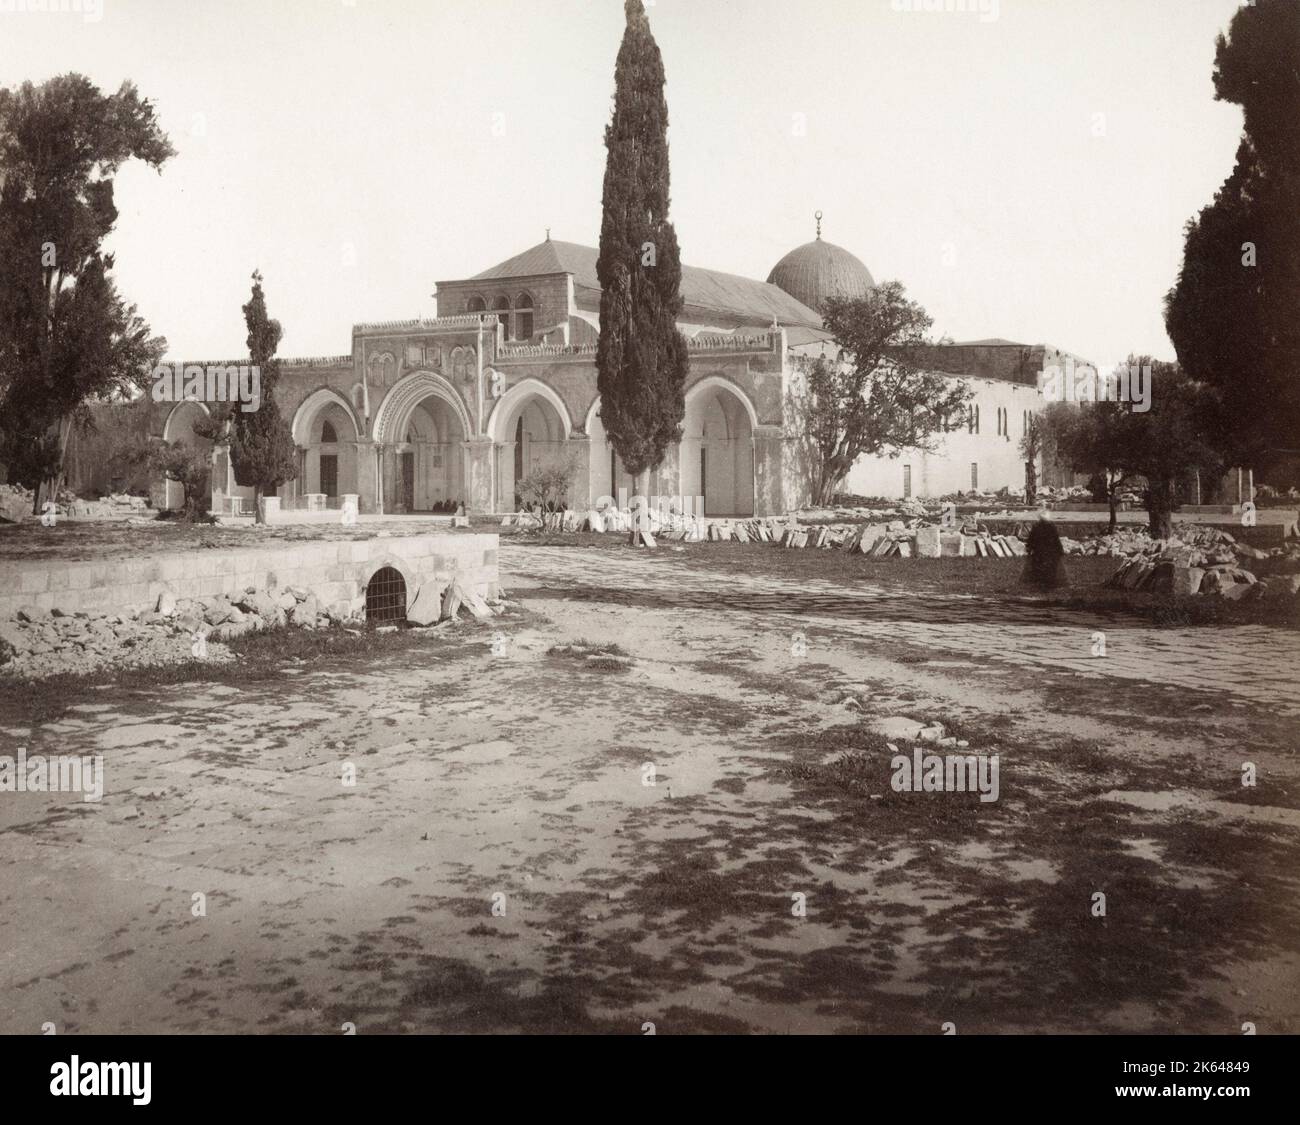 Vintage 19th ° secolo fotografia - al Aqsa moschea, circa 1890's. La moschea di al-Aqsa, situata nella città vecchia di Gerusalemme, è il terzo luogo più sacro dell'Islam. La moschea fu costruita sulla cima del Monte del Tempio, conosciuto come il composto di al Aqsa o Haram esh-Sharif nell'Islam. Foto Stock